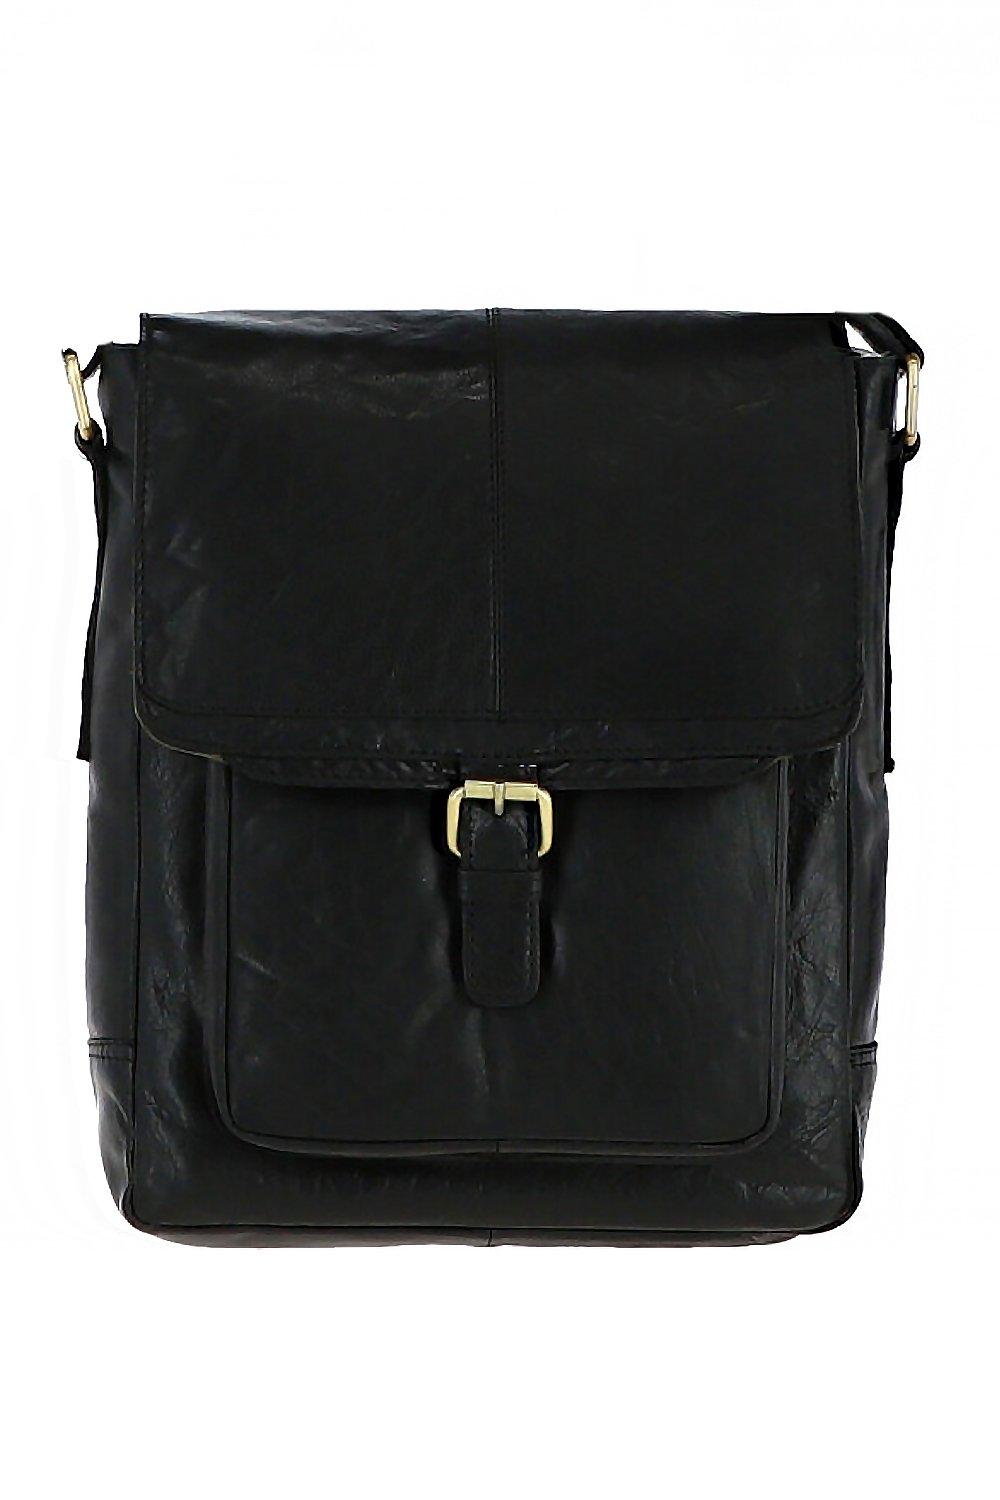 Дорожная сумка из винтажной кожи среднего размера Ashwood Leather, черный сумка кобура повседневная натуральная кожа внутренний карман регулируемый ремень черный